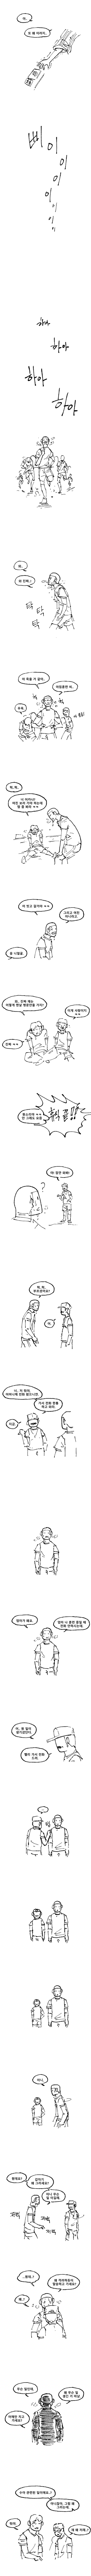 (비극) 소꿉친구와 팔씨름 하는 법 - 순애 채널 006.png